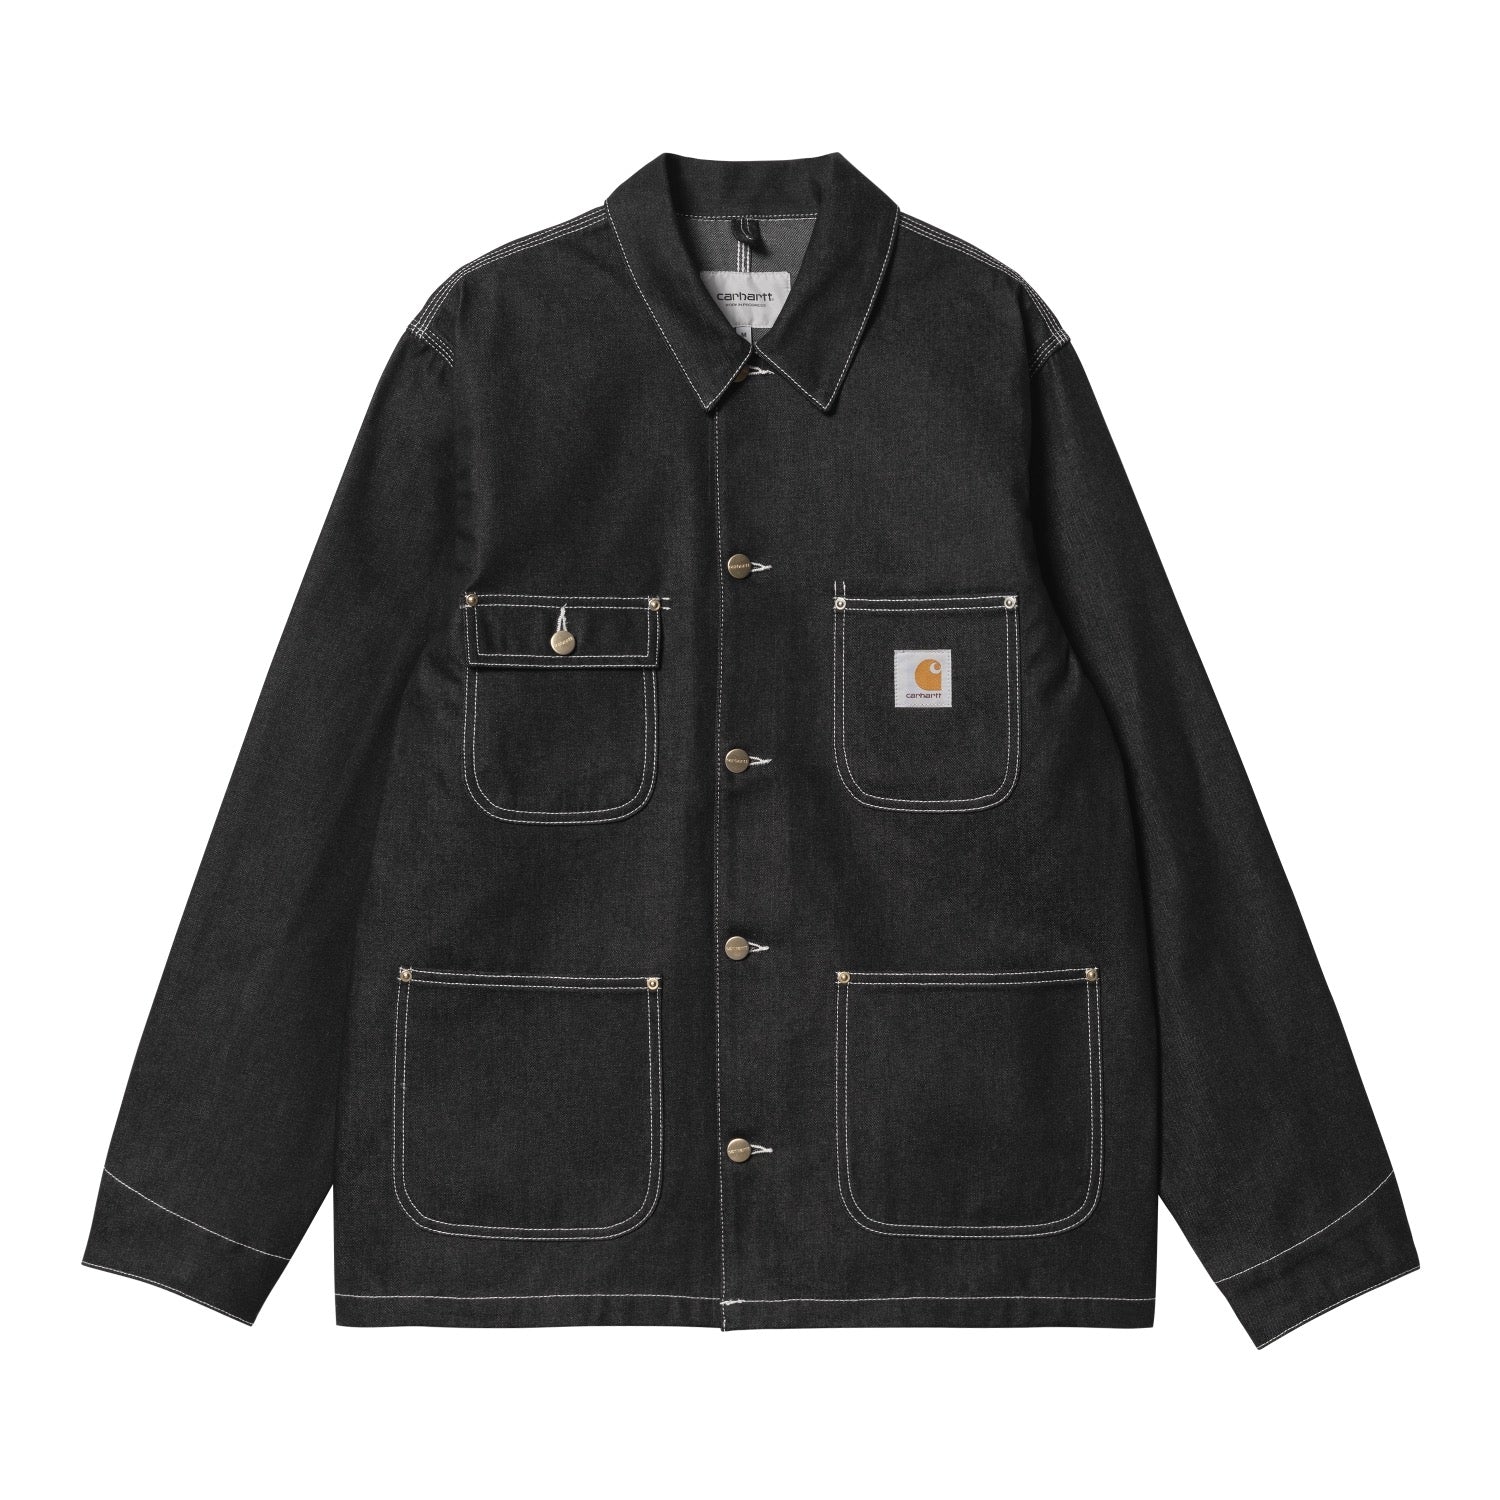 7,350円carhartt chore coat ブラック